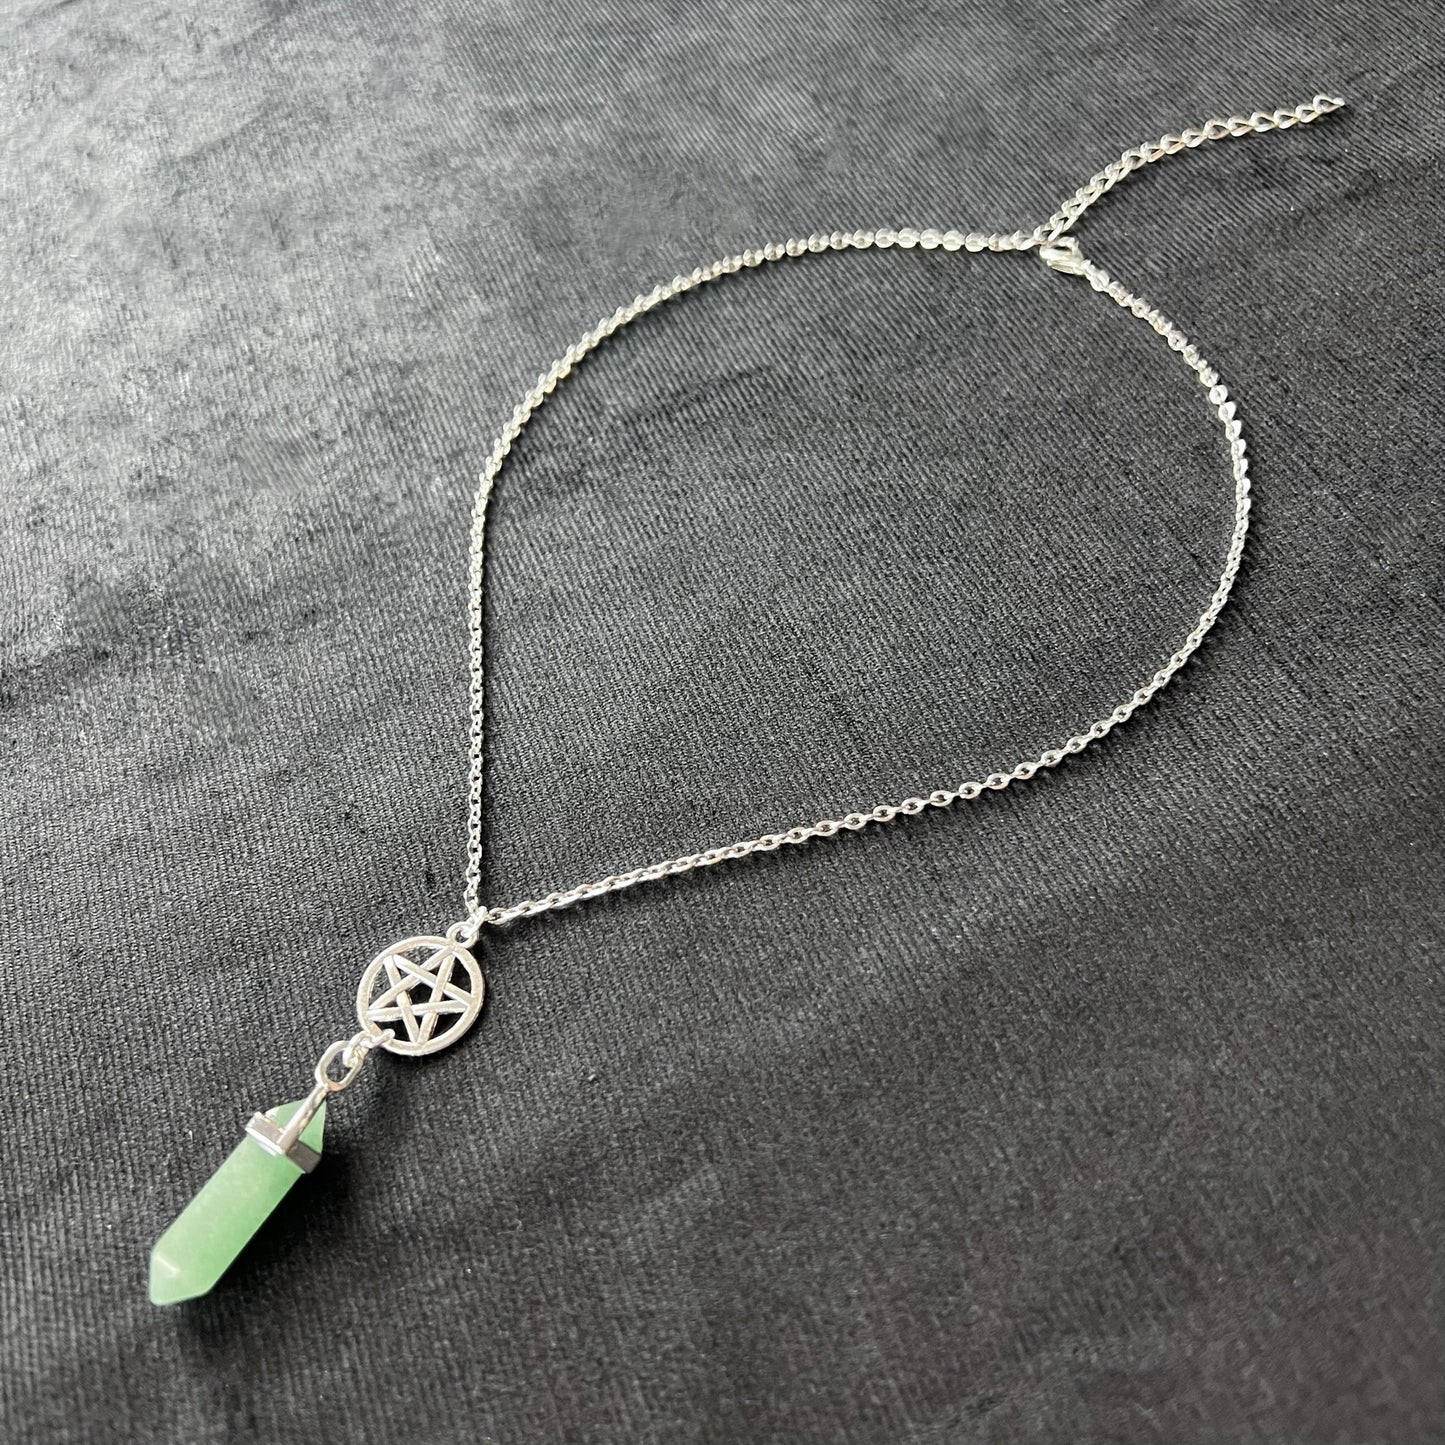 Pentacle pendulum necklace - obsidian, quartz, rose quartz, or aventurine Baguette Magick